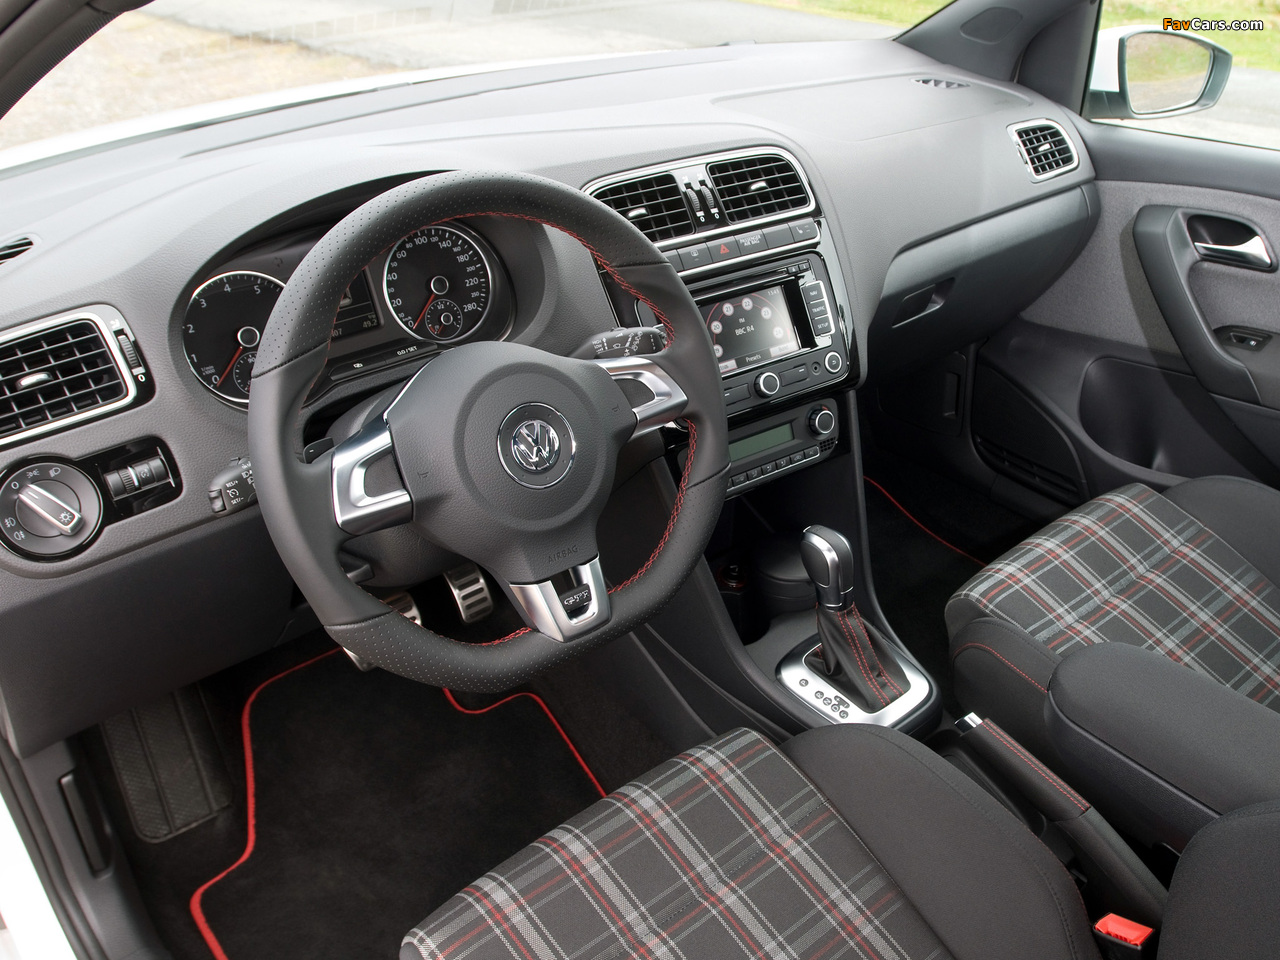 Volkswagen Polo GTI 3-door (Typ 6R) 2010 pictures (1280 x 960)